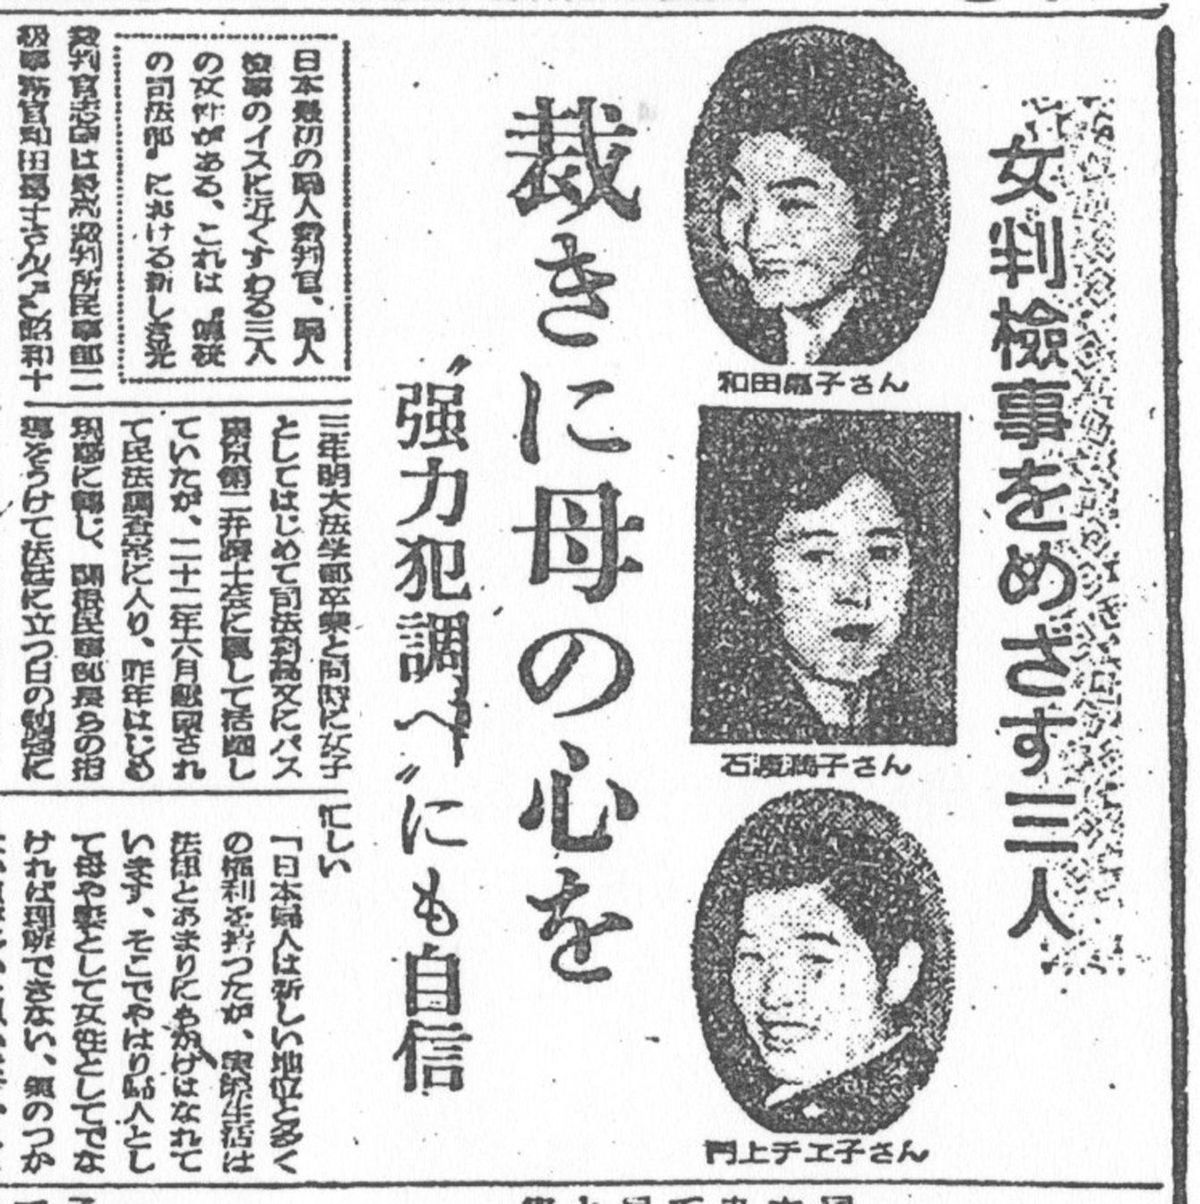 和田嘉子（のちの三淵嘉子）や石渡満子らが女性初の判検事を目指していることを報じる新聞